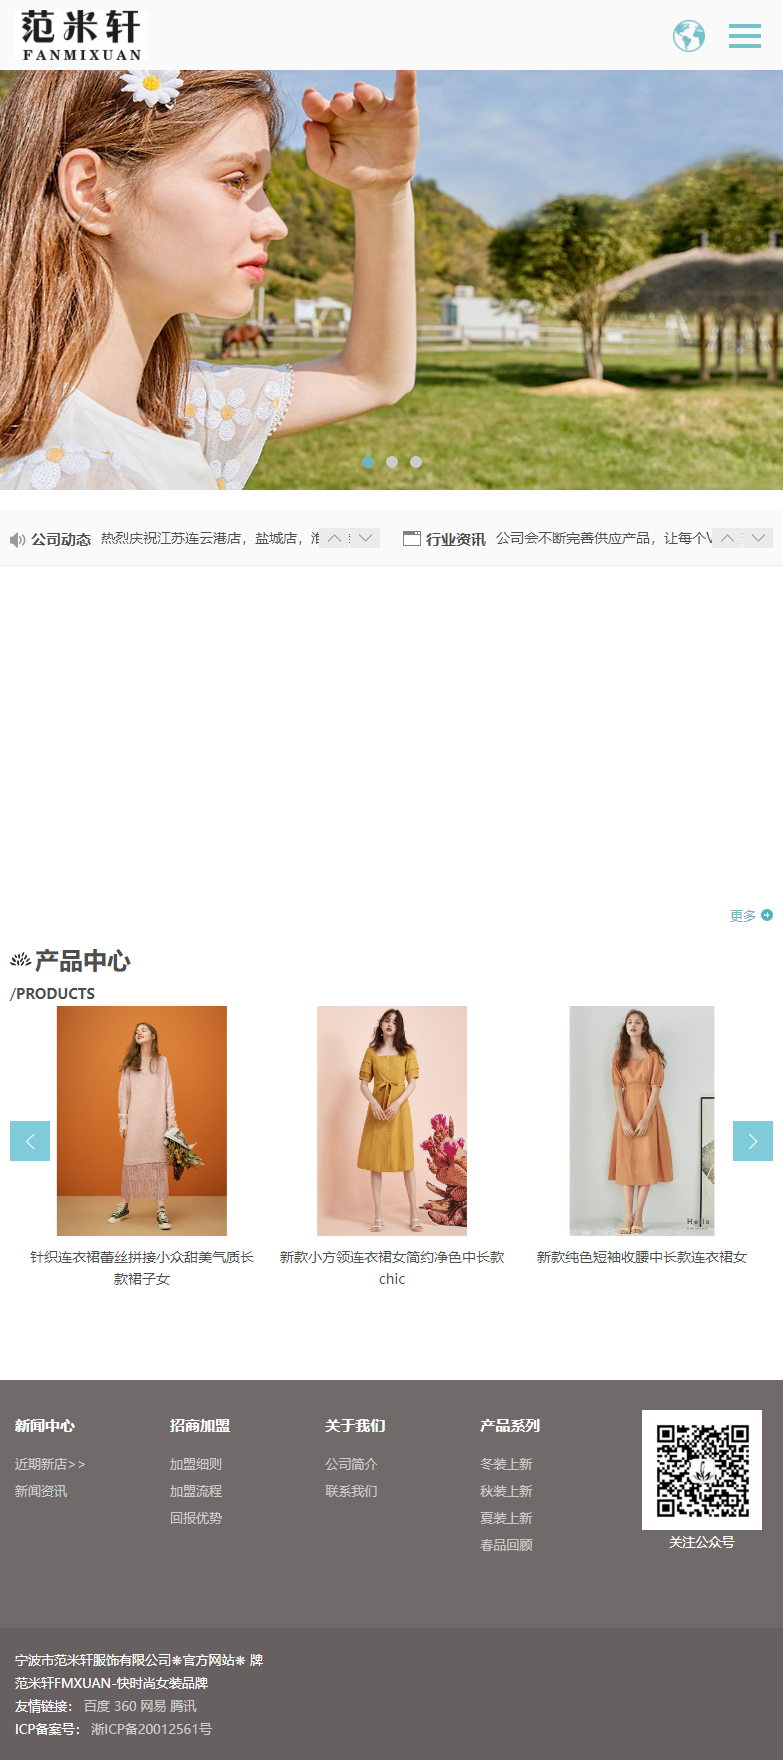 宁波市范米轩服饰有限公司网站案例